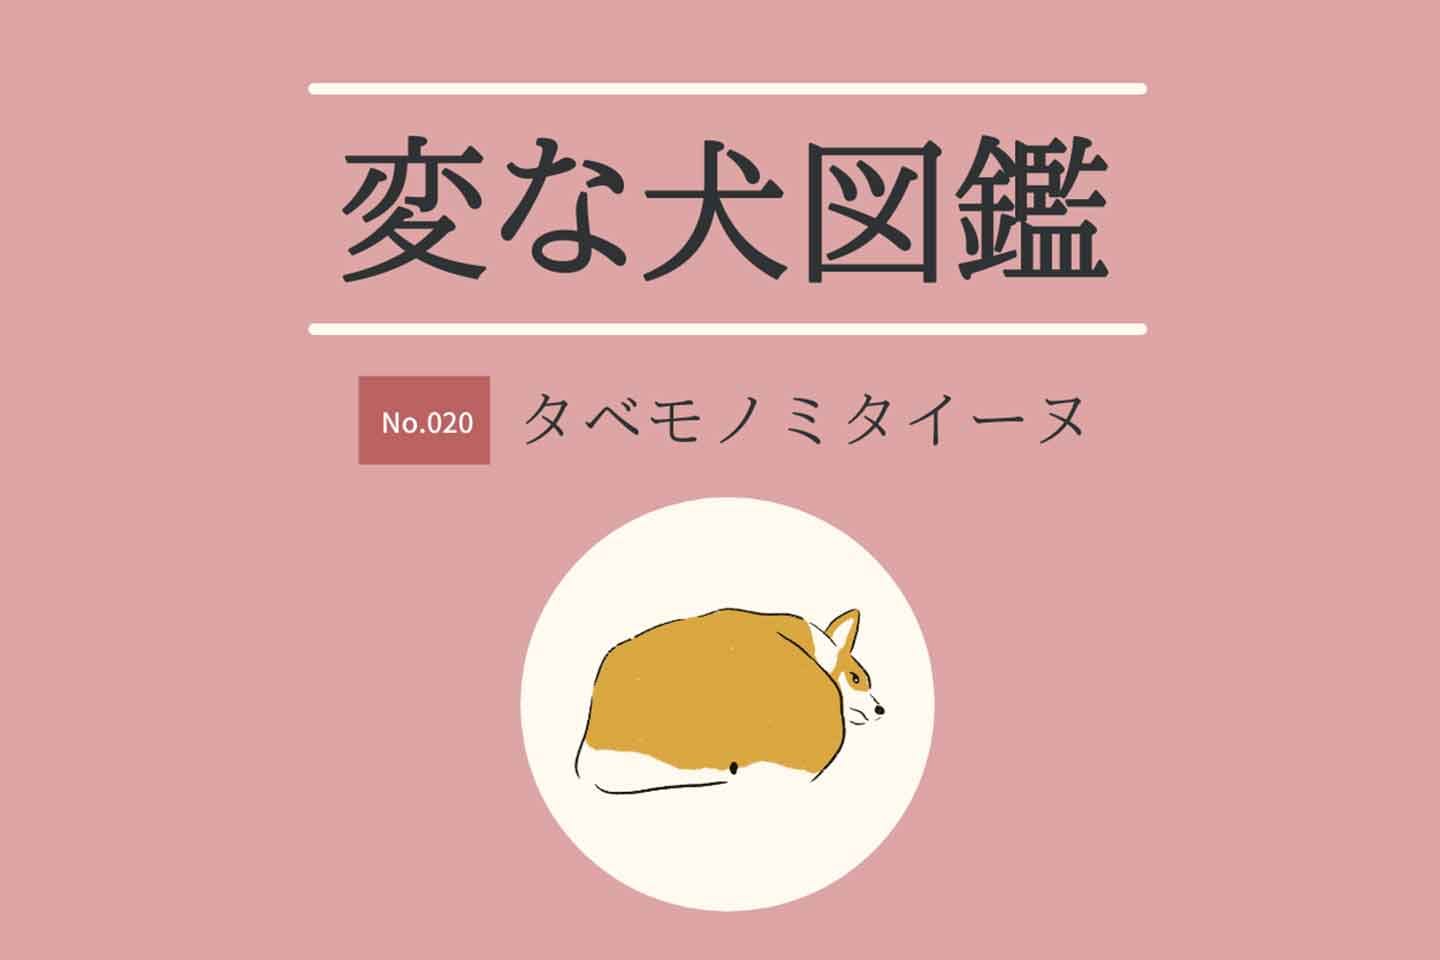 【変な犬図鑑No.020 タベモノミタイーヌ】食べ物と一致する犬たち！  犬好きなら分かる「あるある」